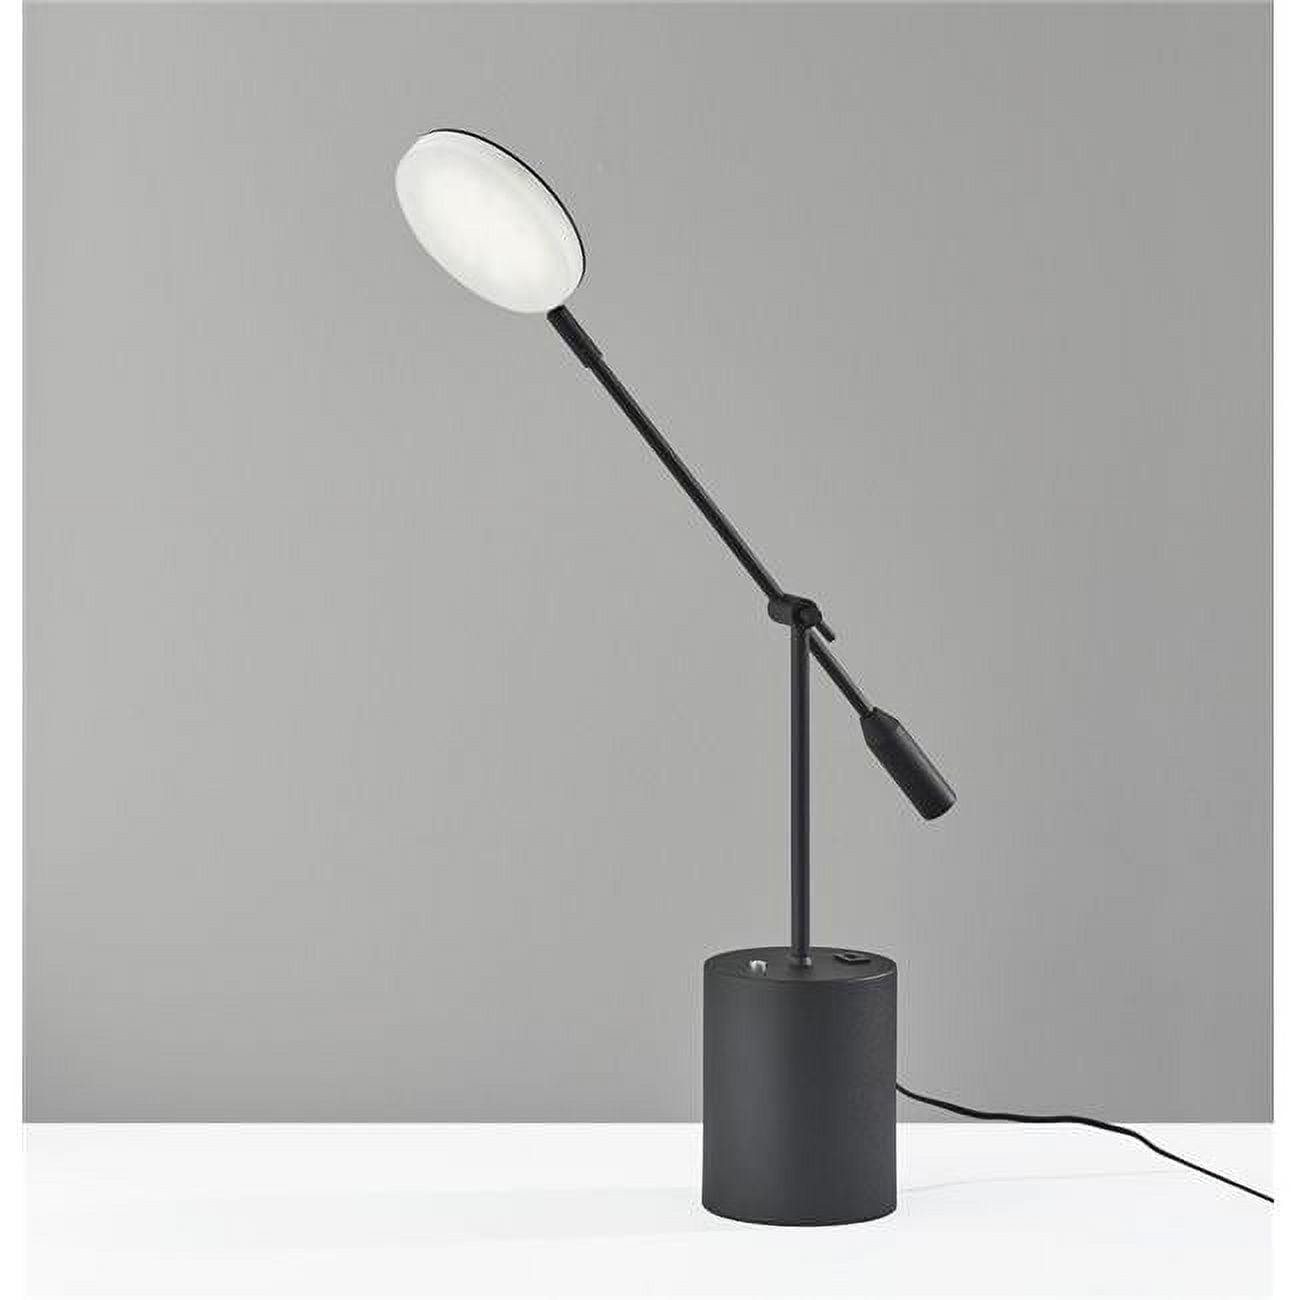 Circadian Sync Black Steel LED Floor Lamp with Adjustable Brightness